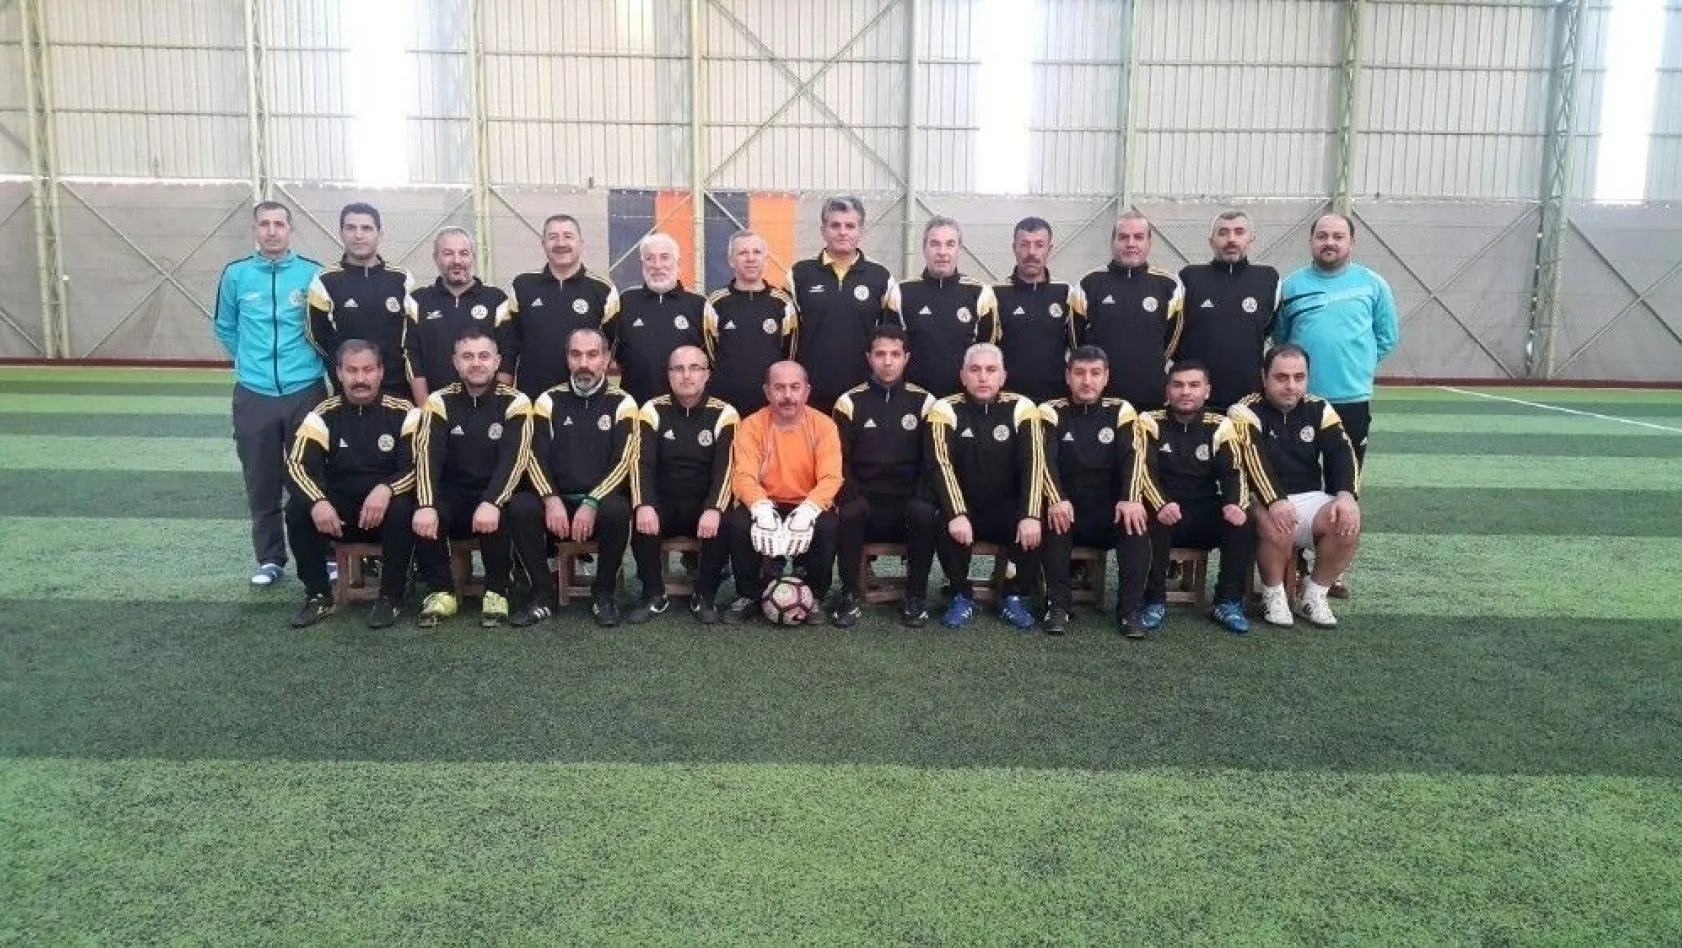 Masterler Futbol Takımı Kıbrıs yolcusu
